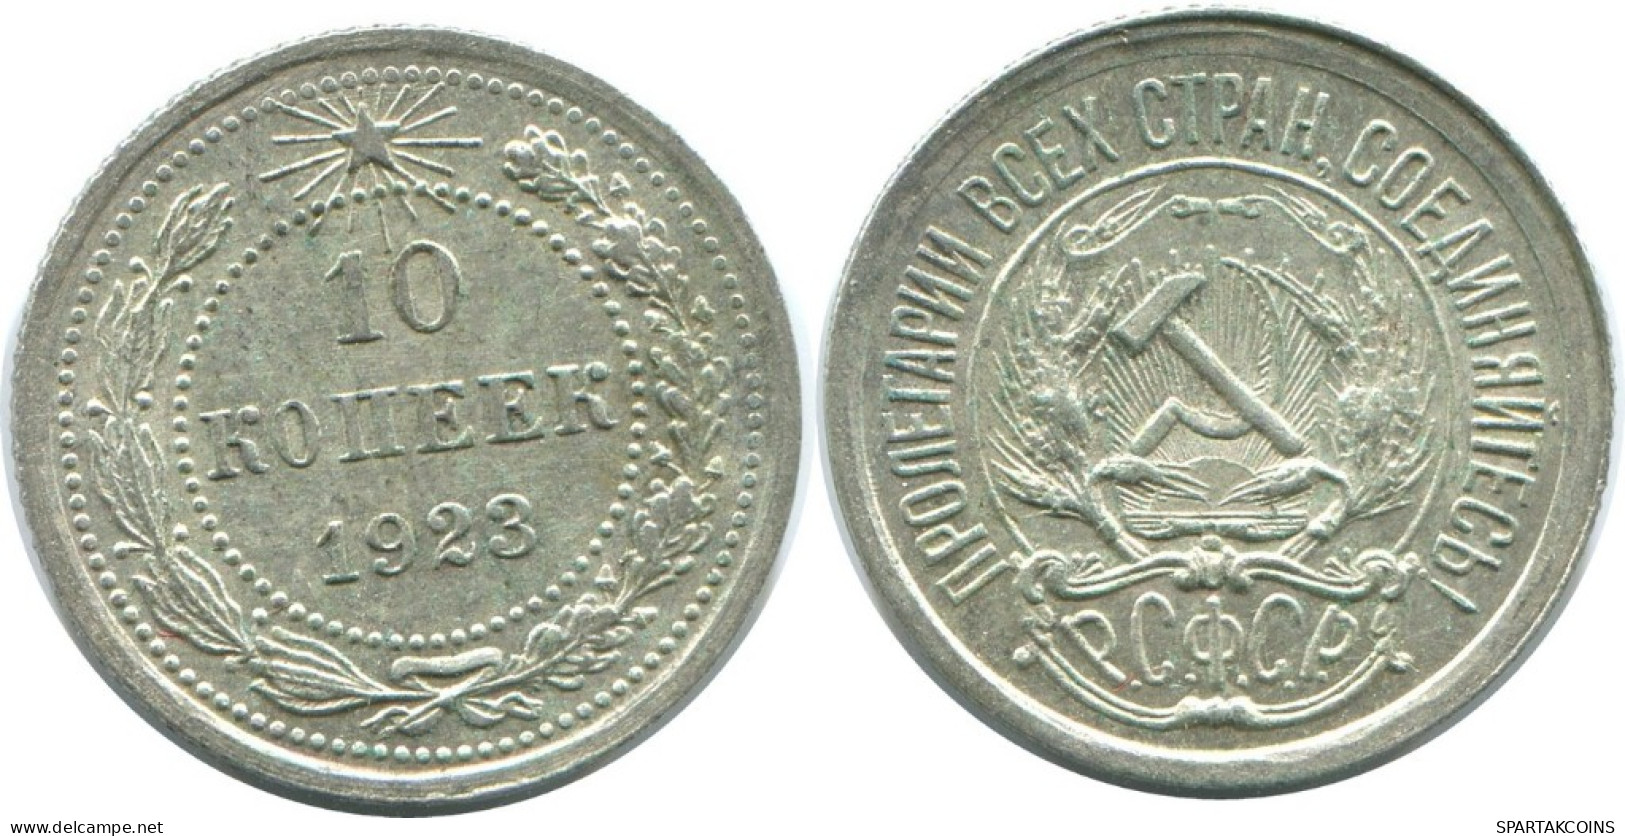 10 KOPEKS 1923 RUSSLAND RUSSIA RSFSR SILBER Münze HIGH GRADE #AE906.4.D.A - Russia